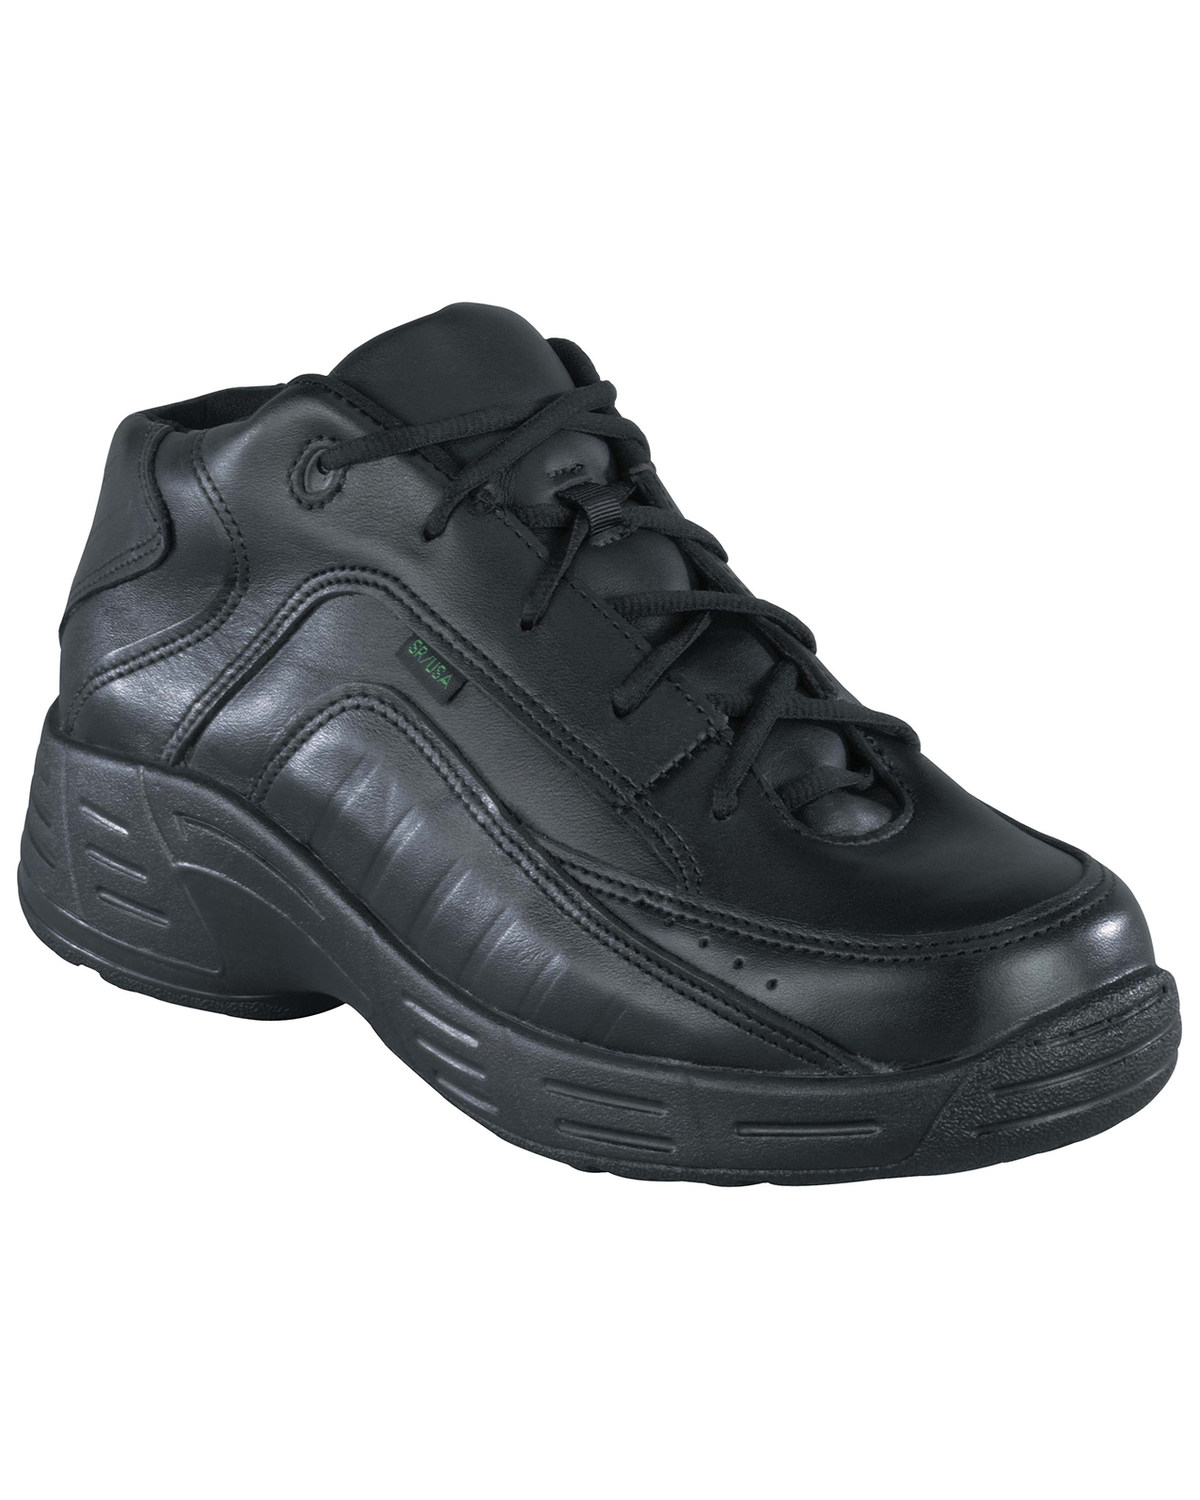 Reebok Men's Postal TCT Work Shoes - USPS Approved